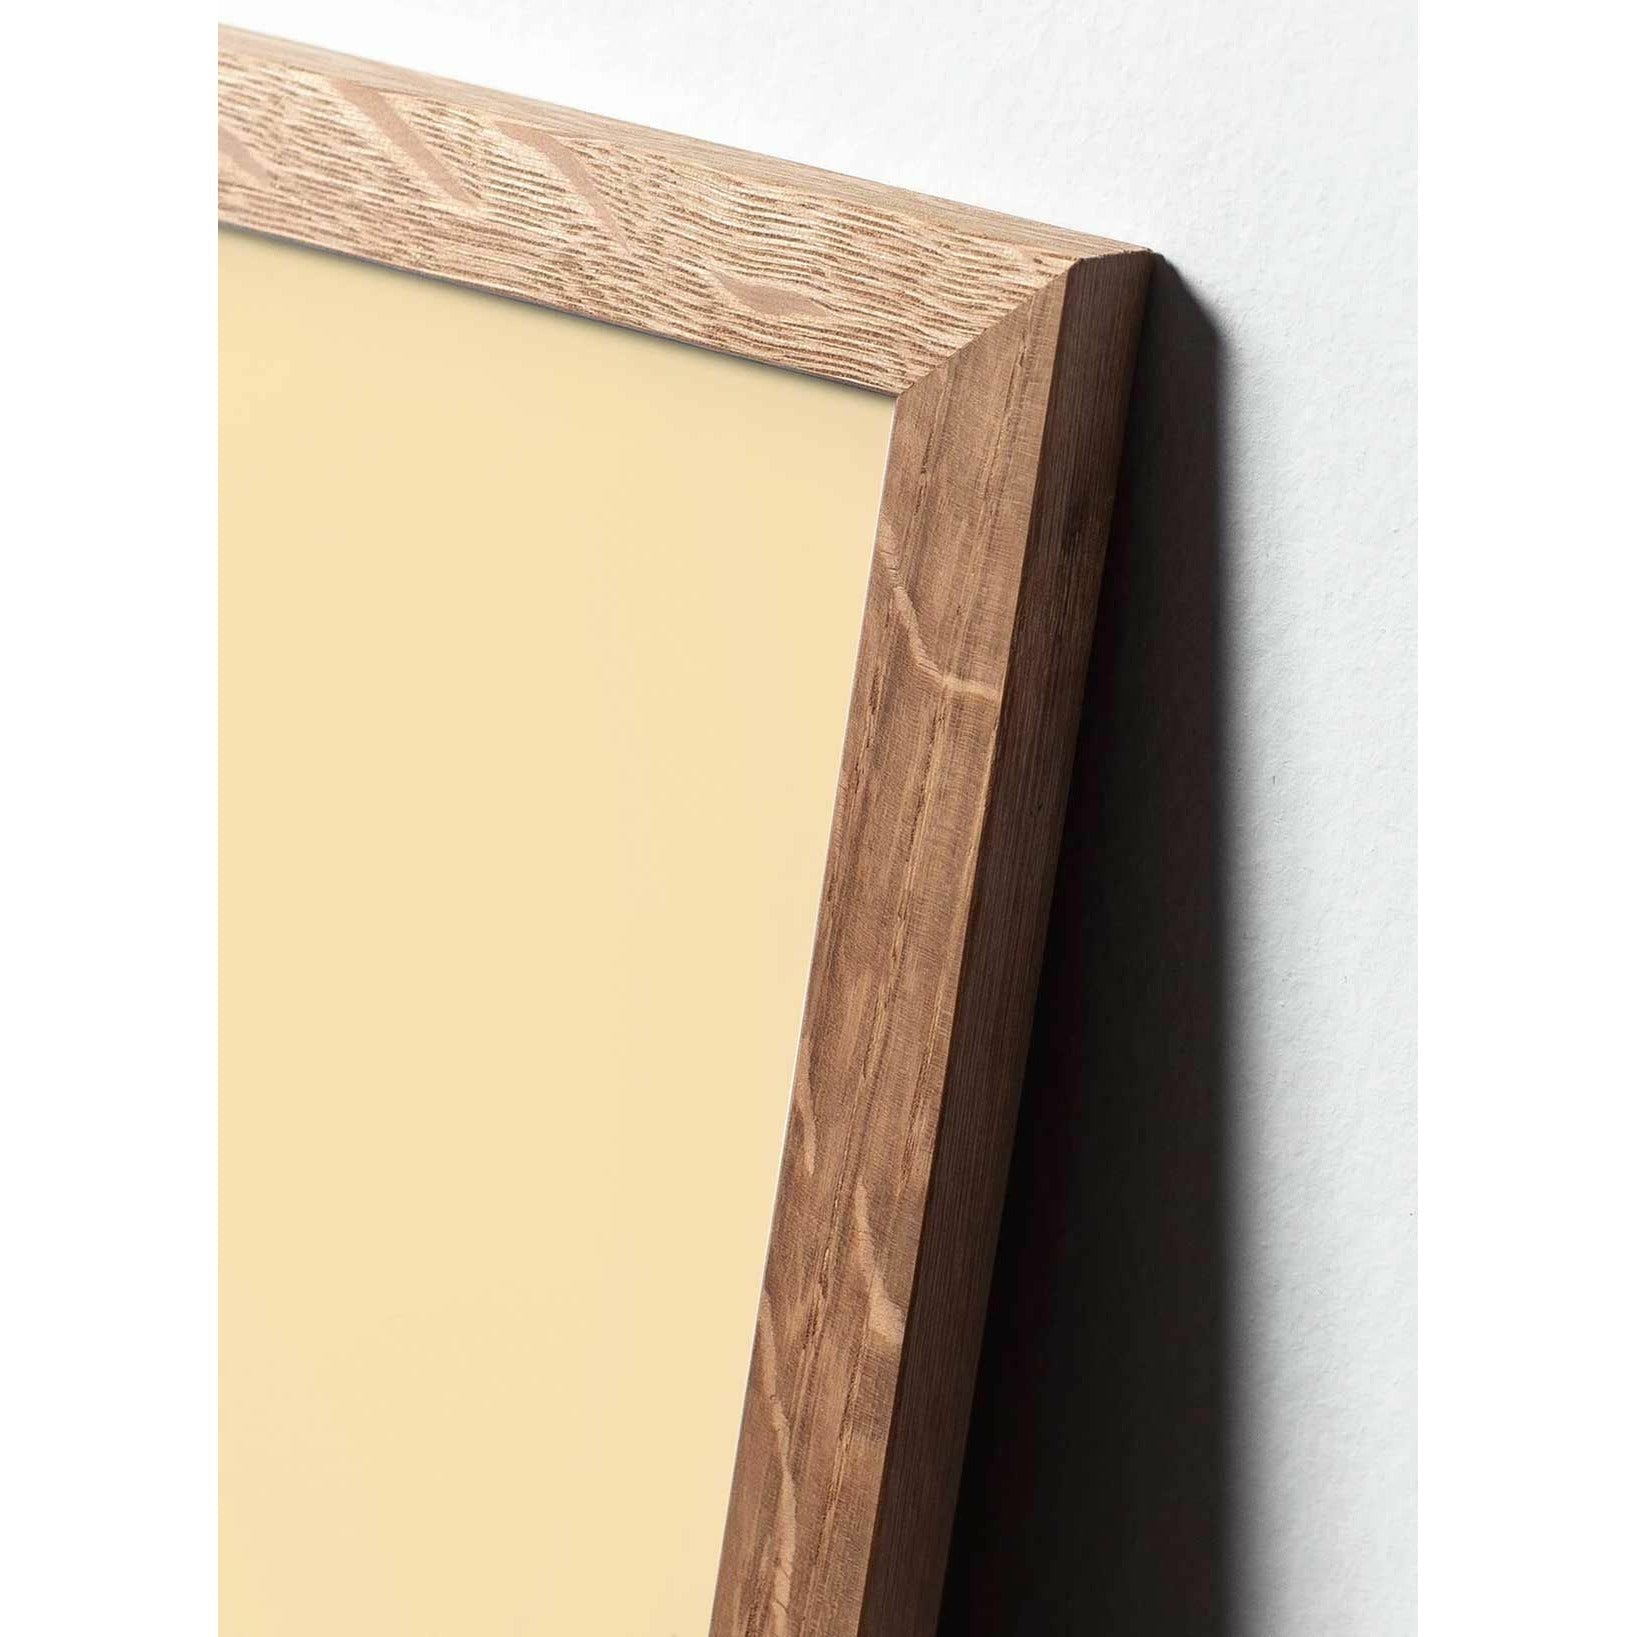 Brainchild Snowdrop Design Icon Poster, frame gemaakt van licht hout A5, roze